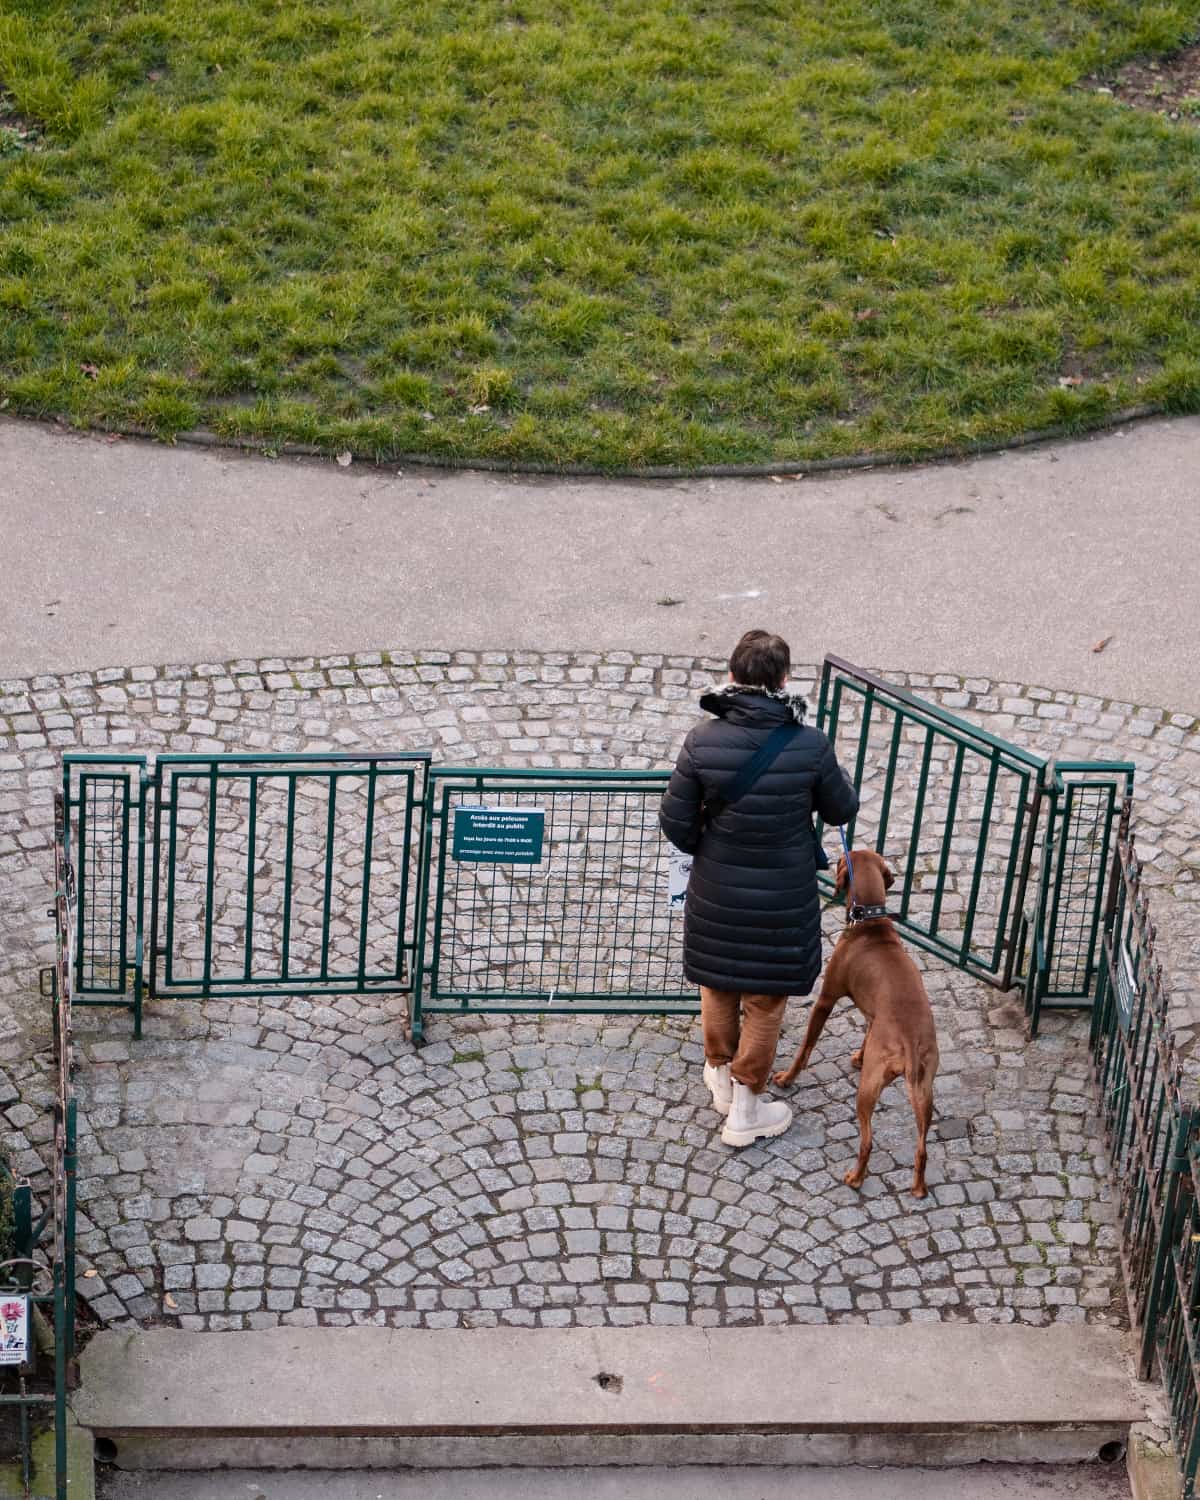 A dog owner entering the park at Le square du Vert-Galant, île de la cité, Paris